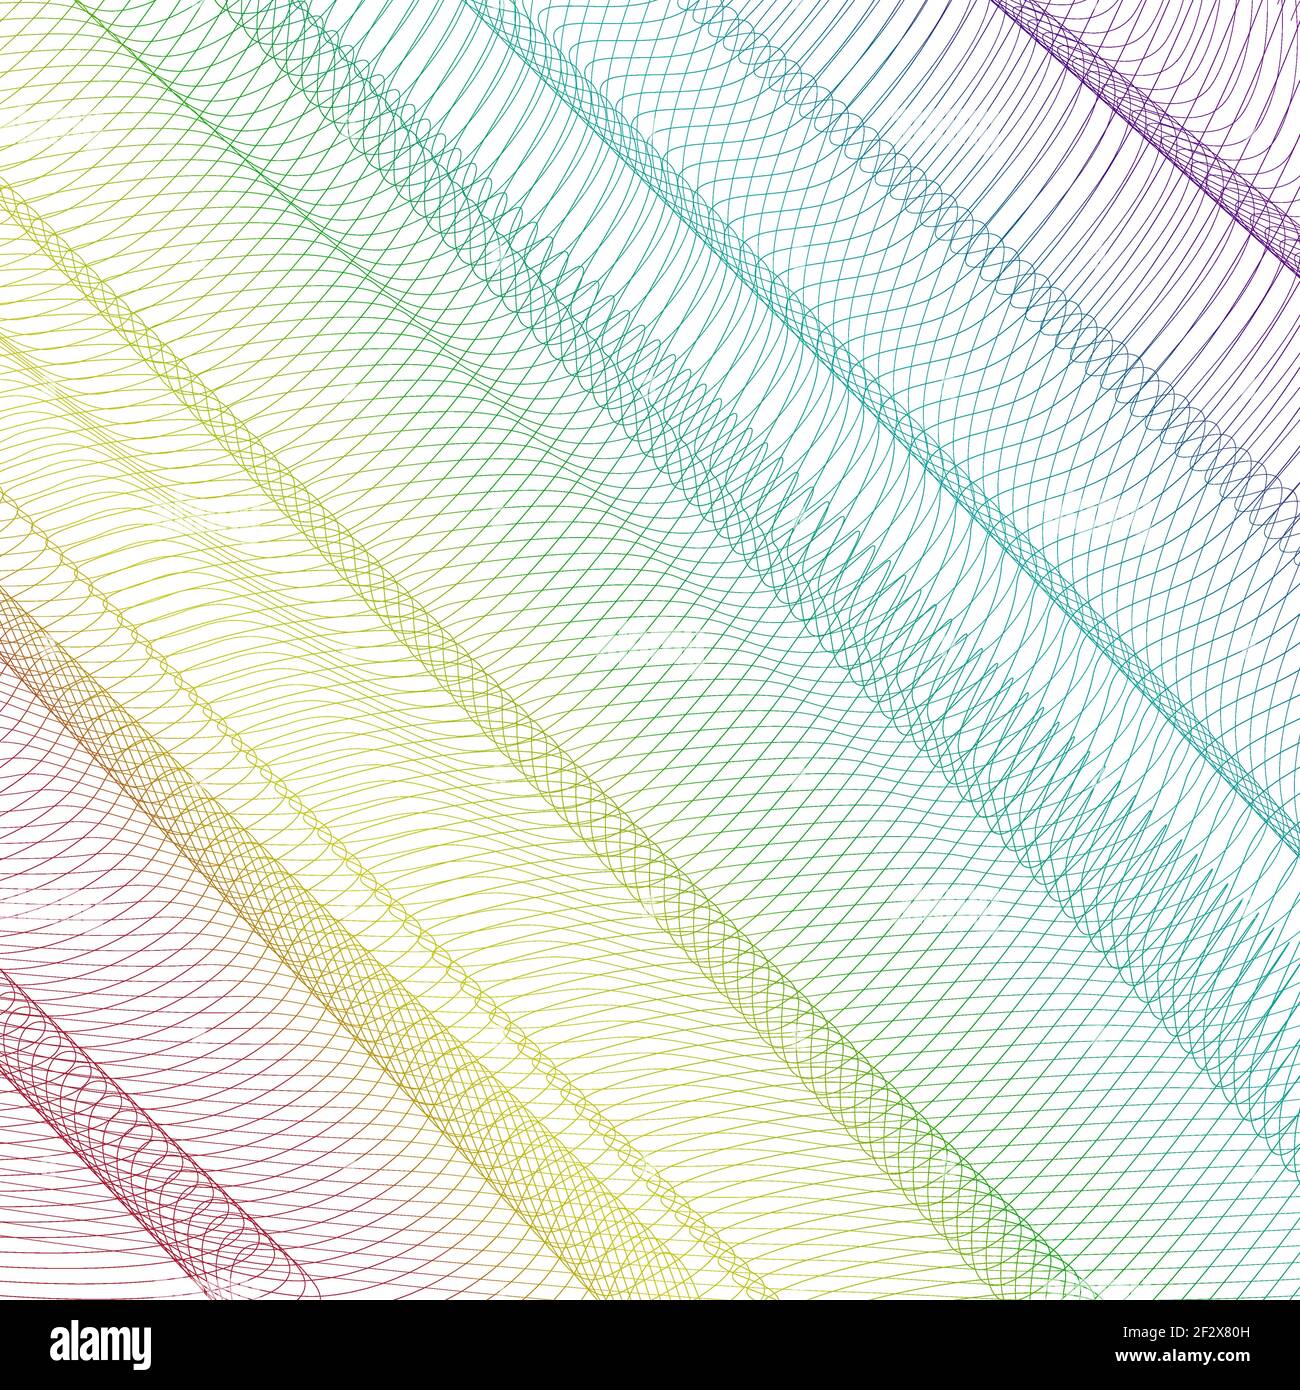 Abstraktes Regenbogennetz. Hintergrund des Hintergrundbilds. Vektor Linie Kunst mehrfarbiges Muster, Faltengewebe. Diagonale Streifen. Modernes, kreatives Design. EPS10 Stock Vektor